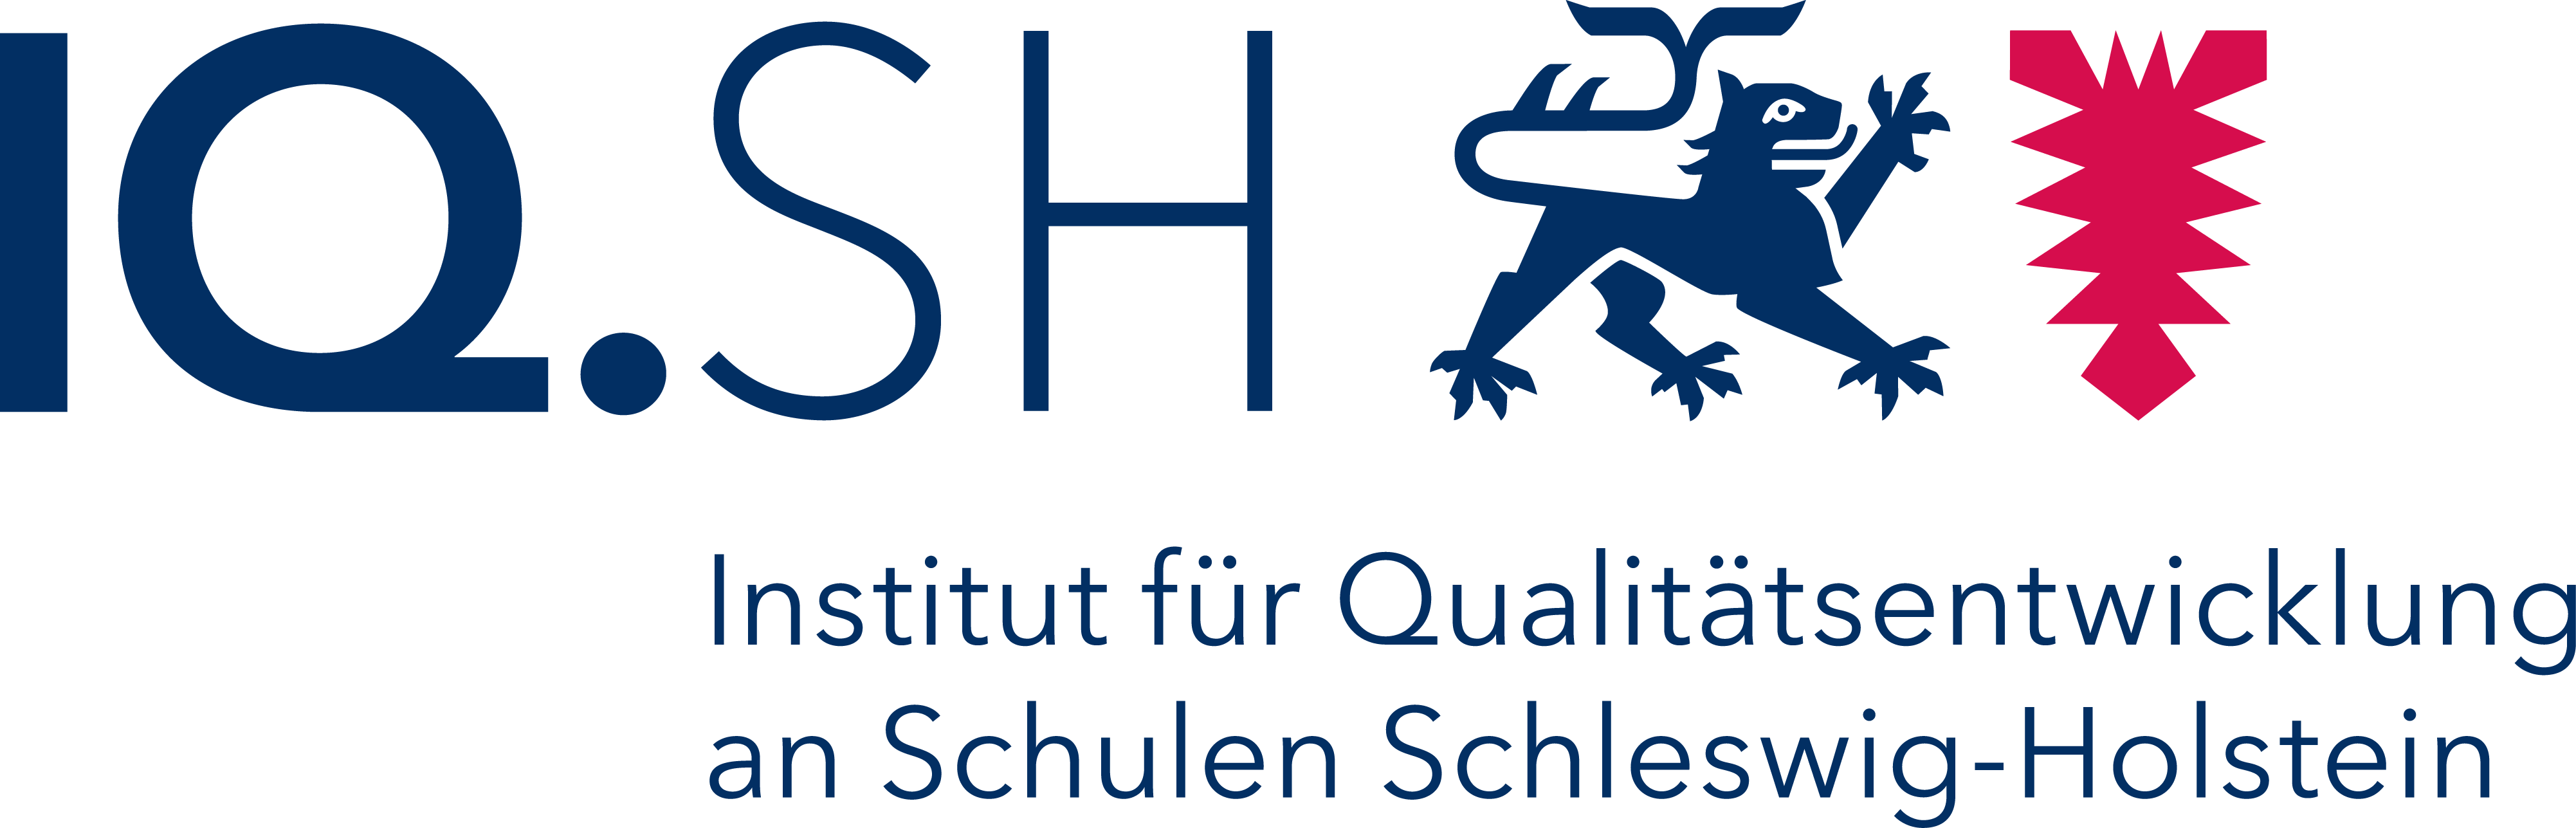 Institut für Qualitätsentwicklung an Schulen Schleswig-Holstein